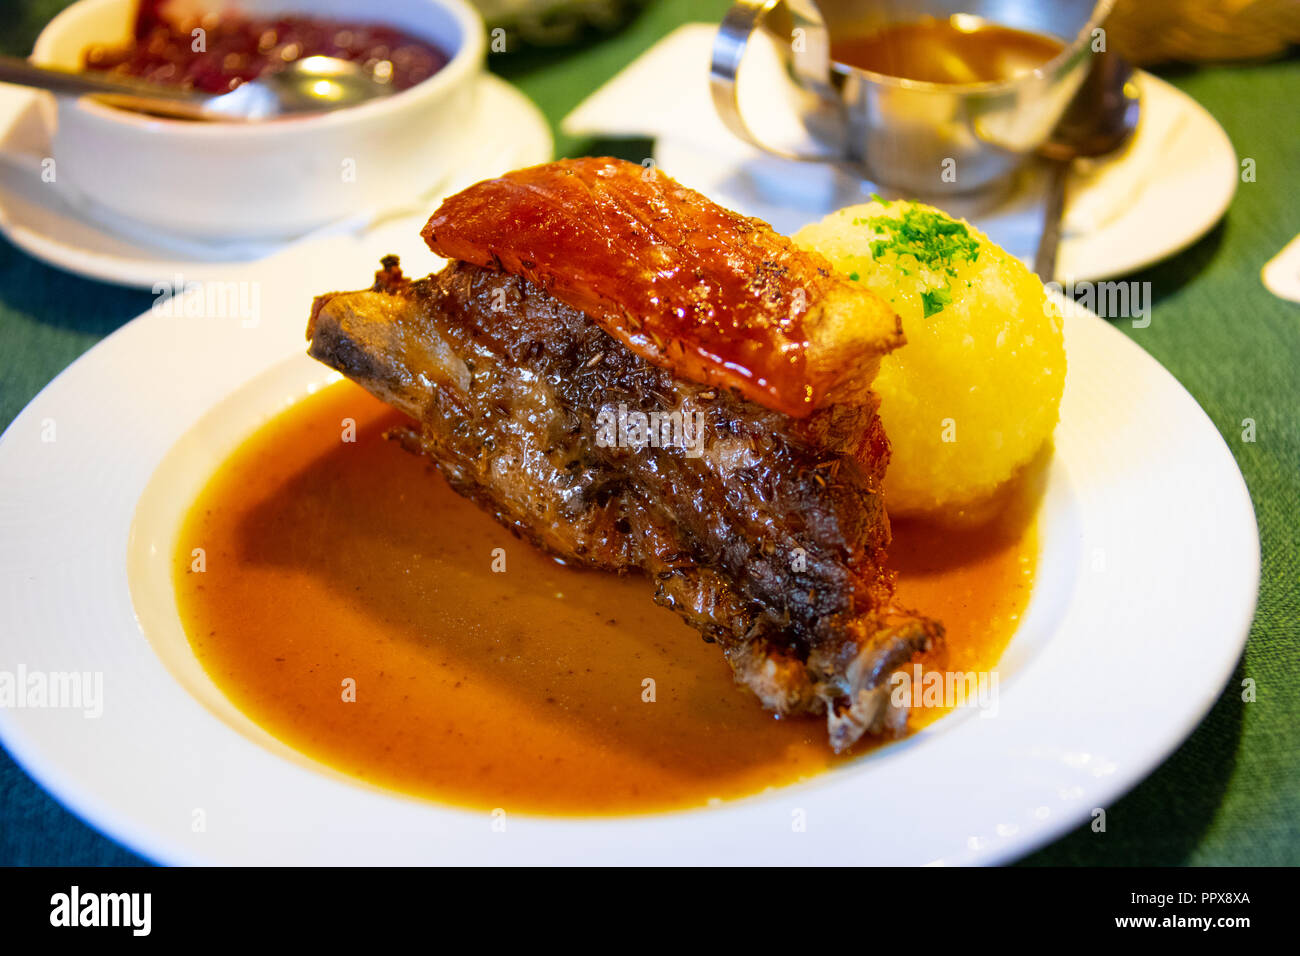 Pork shoulder with crackling skin at Albrecht Durer Stube, a traditional restaurant in Nuremburg, Germany Stock Photo